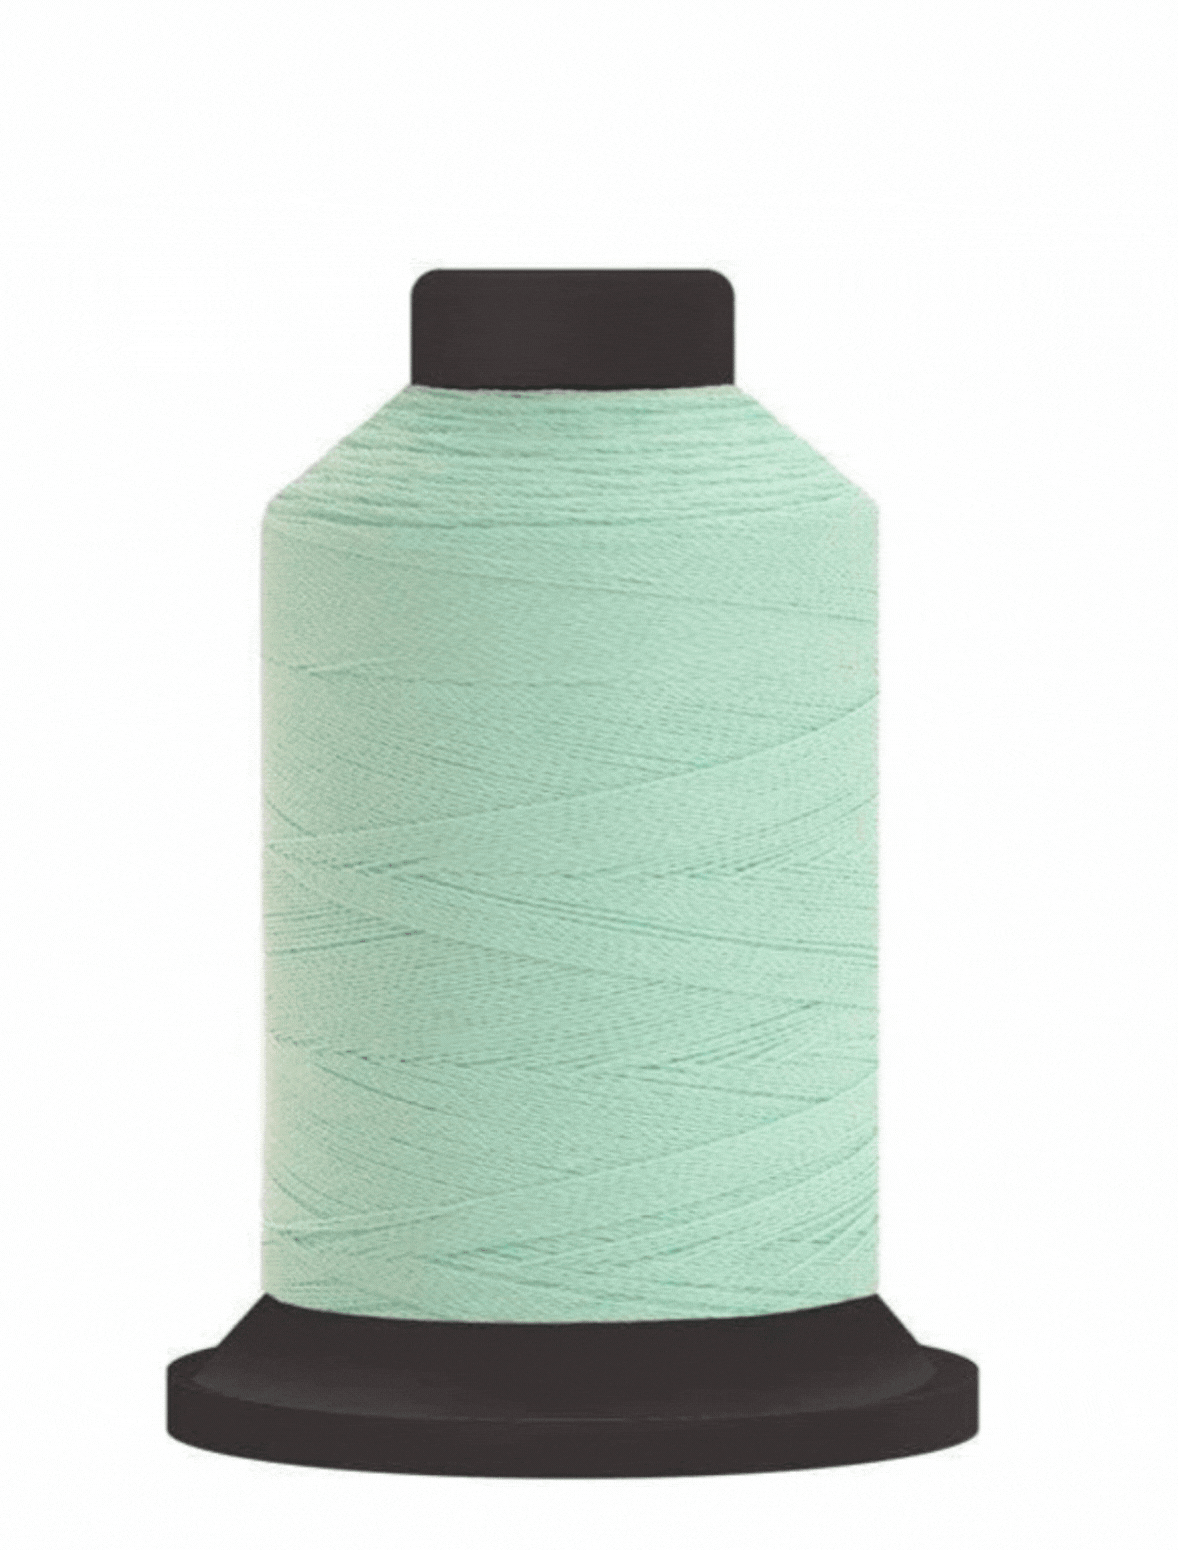 Stitch Eraser Remover Replacement Blades — AllStitch Embroidery Supplies